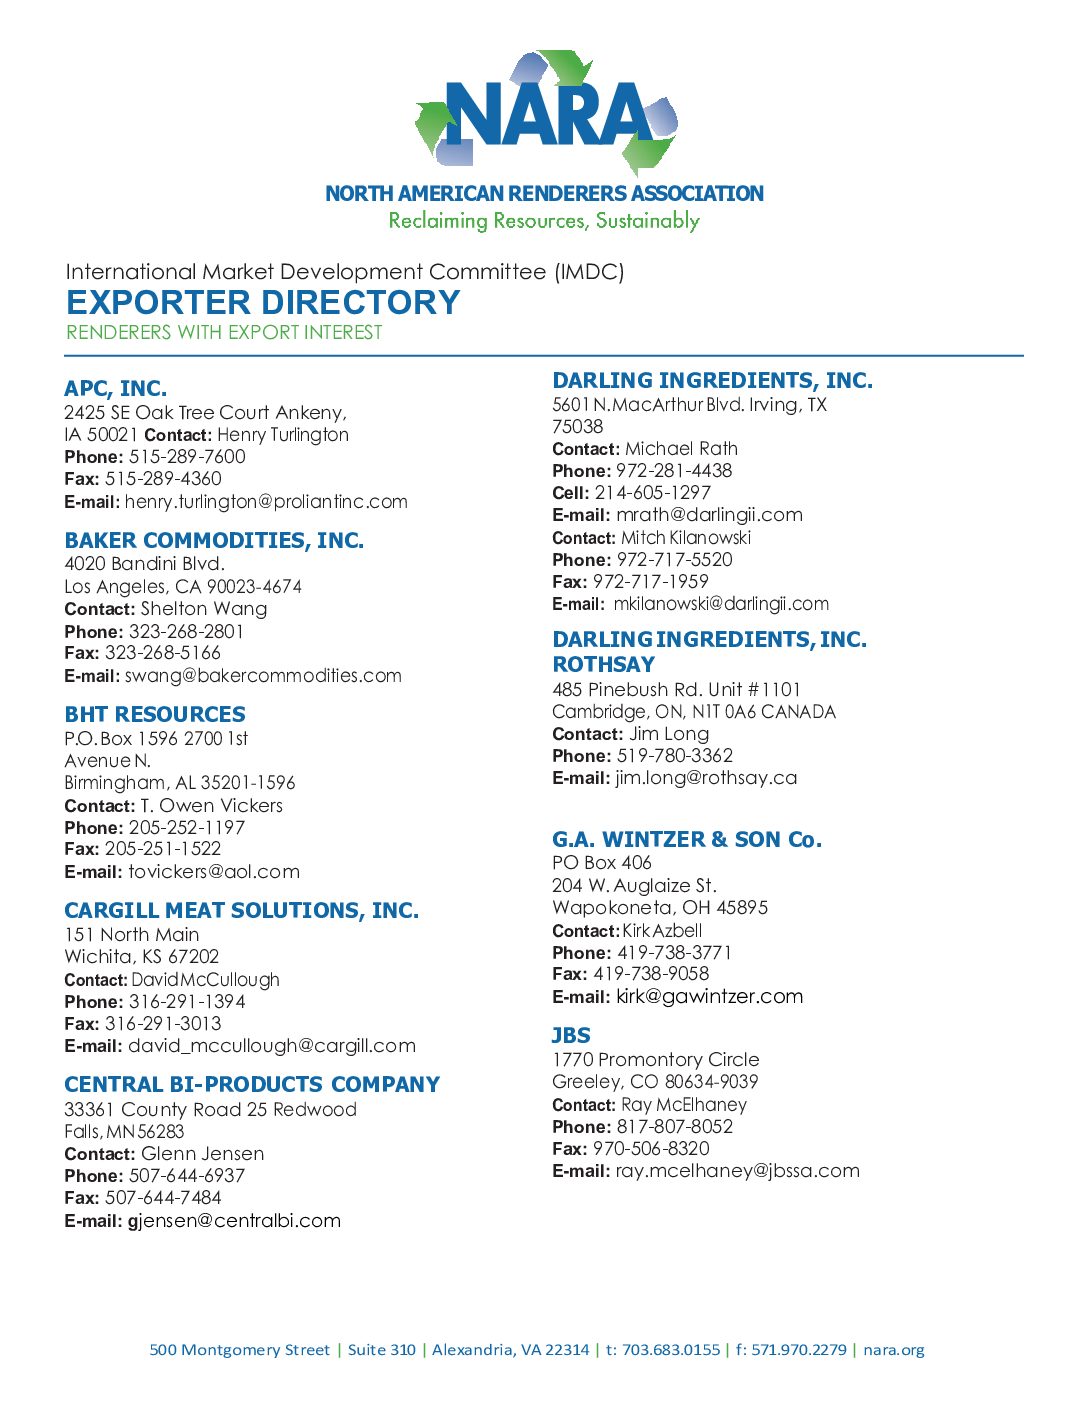 International Market Development Committee Exporter Directory